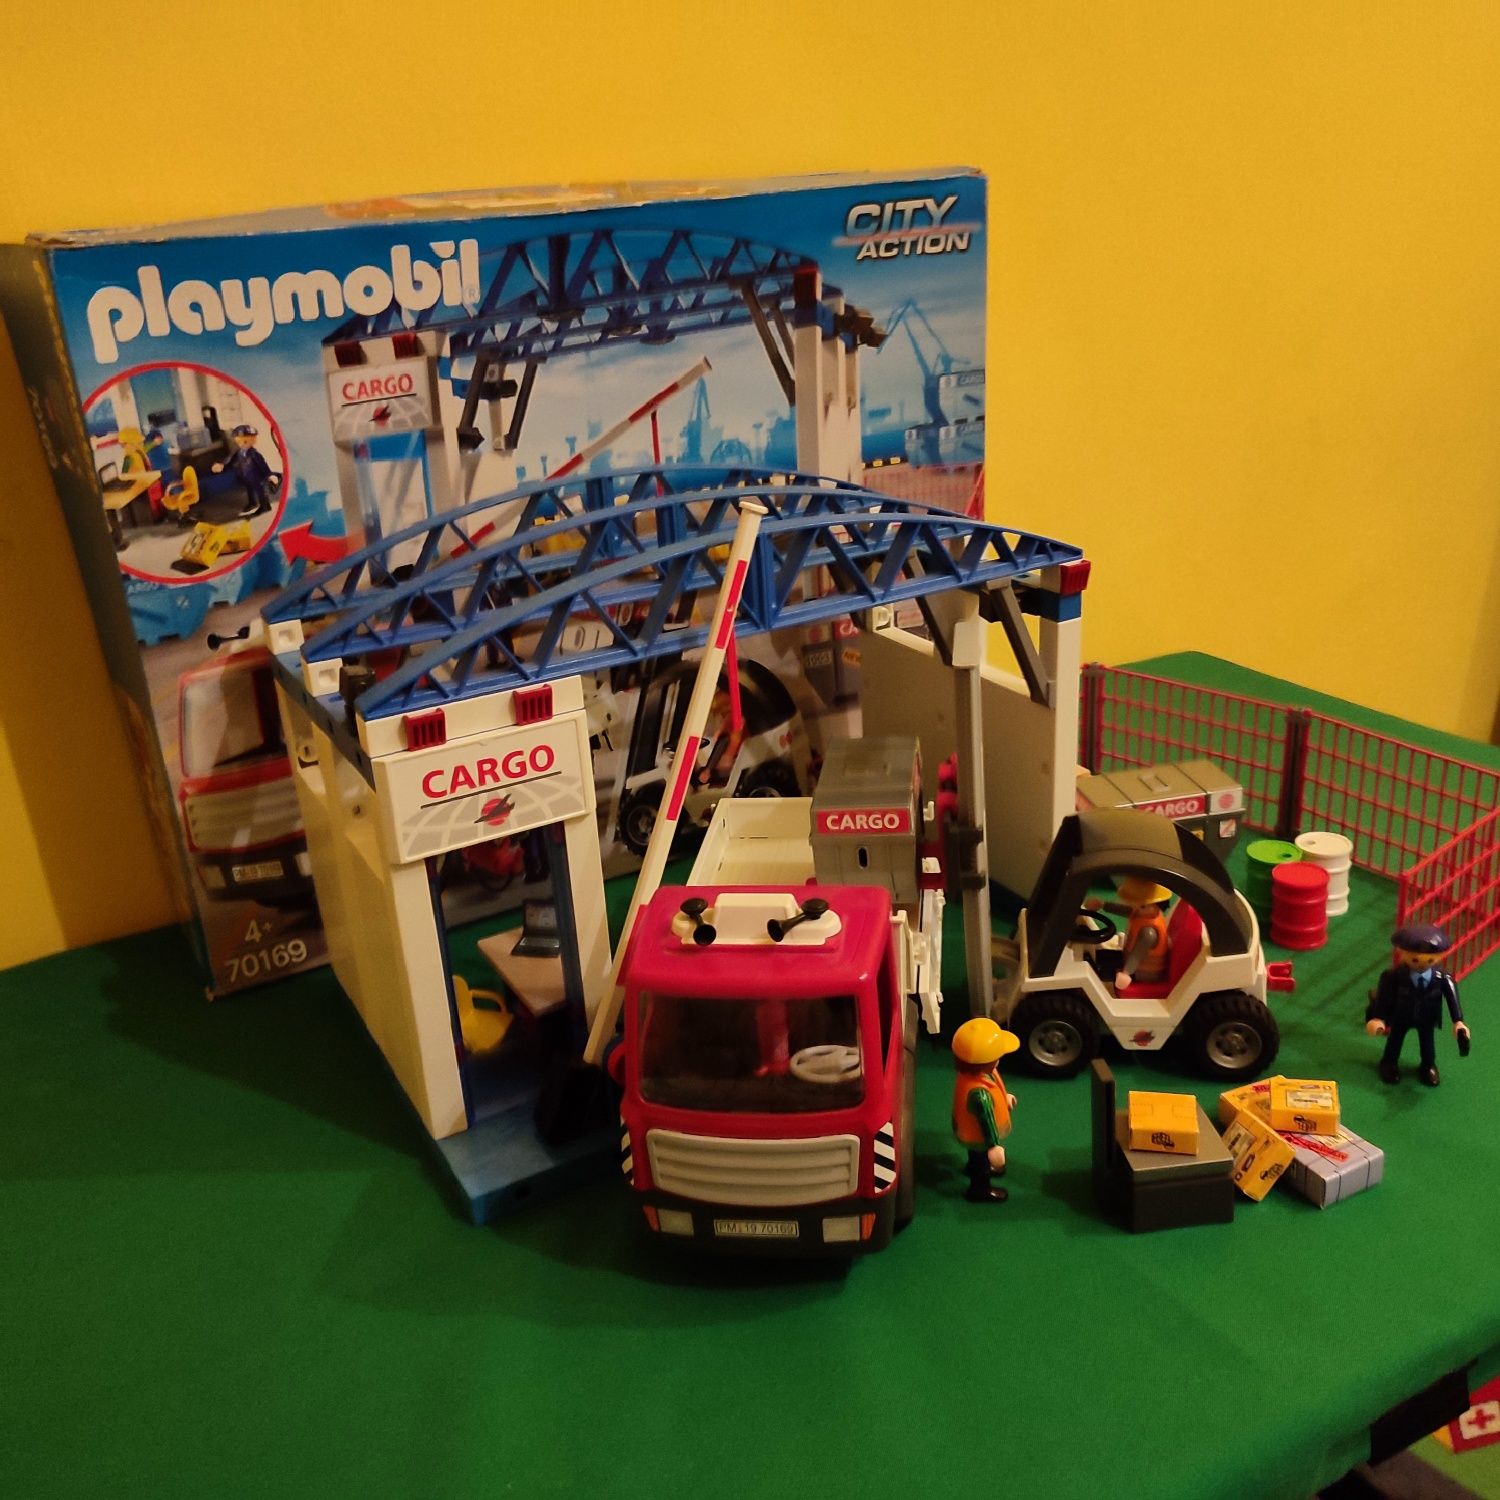 Playmobil 70169 Terminal Cargo